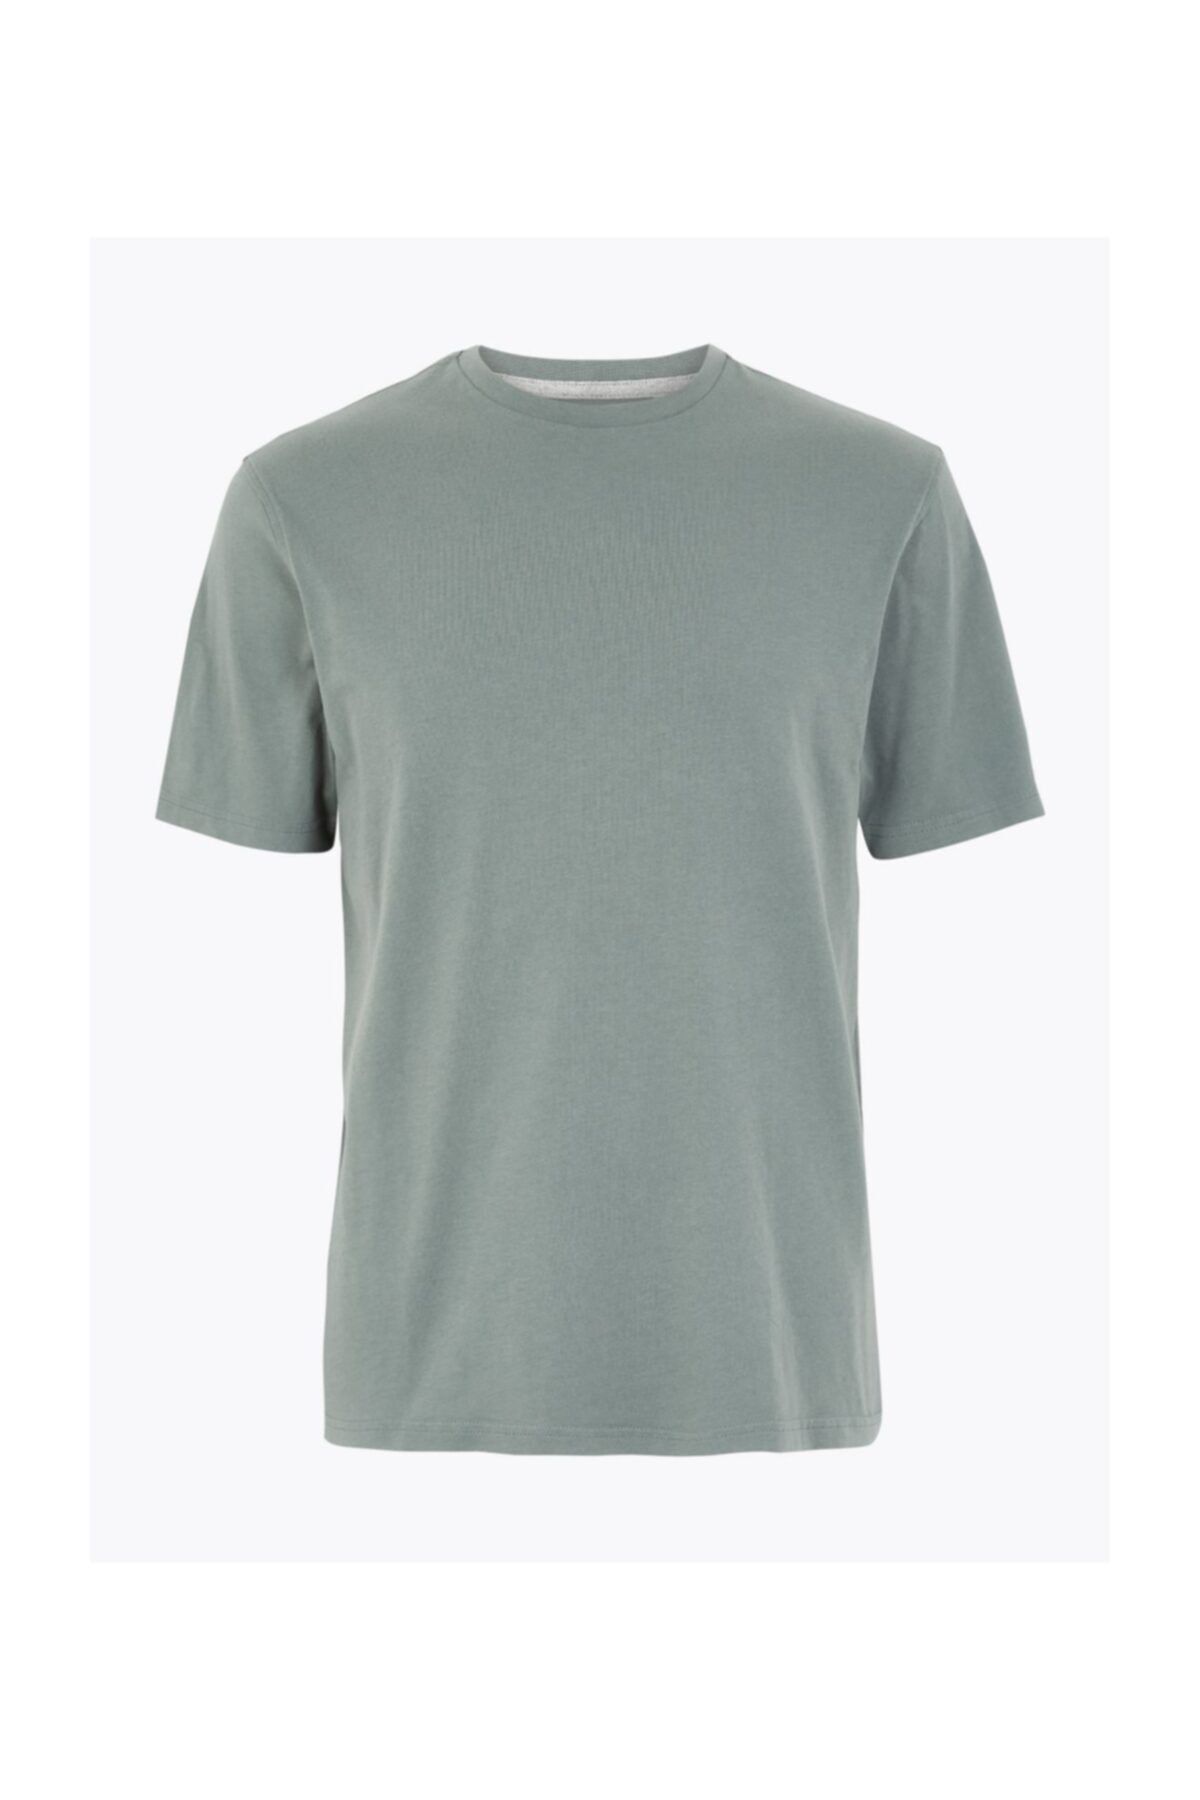 Marks & Spencer Erkek Yeşil Saf Pamuklu Yuvarlak Yaka T-shirt T28005311M